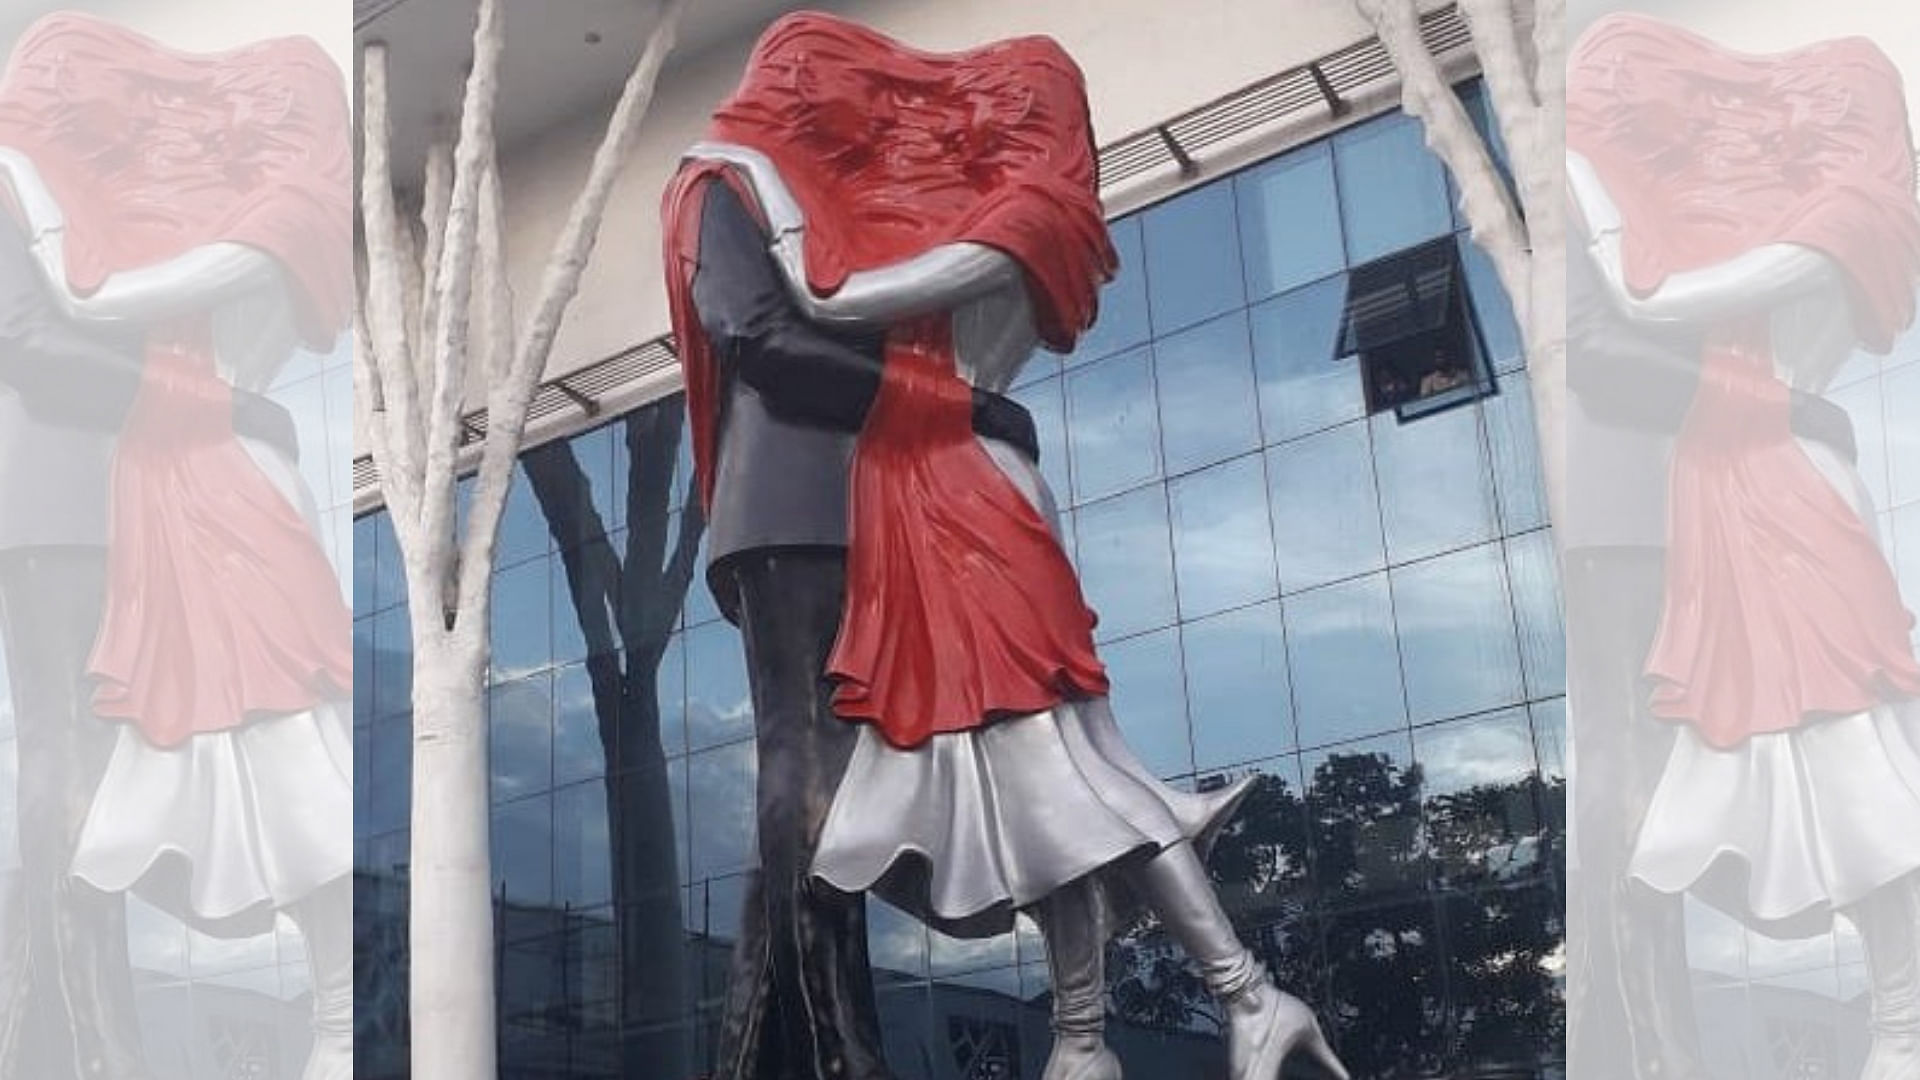 The KZK Statue of Love in Vadodara.